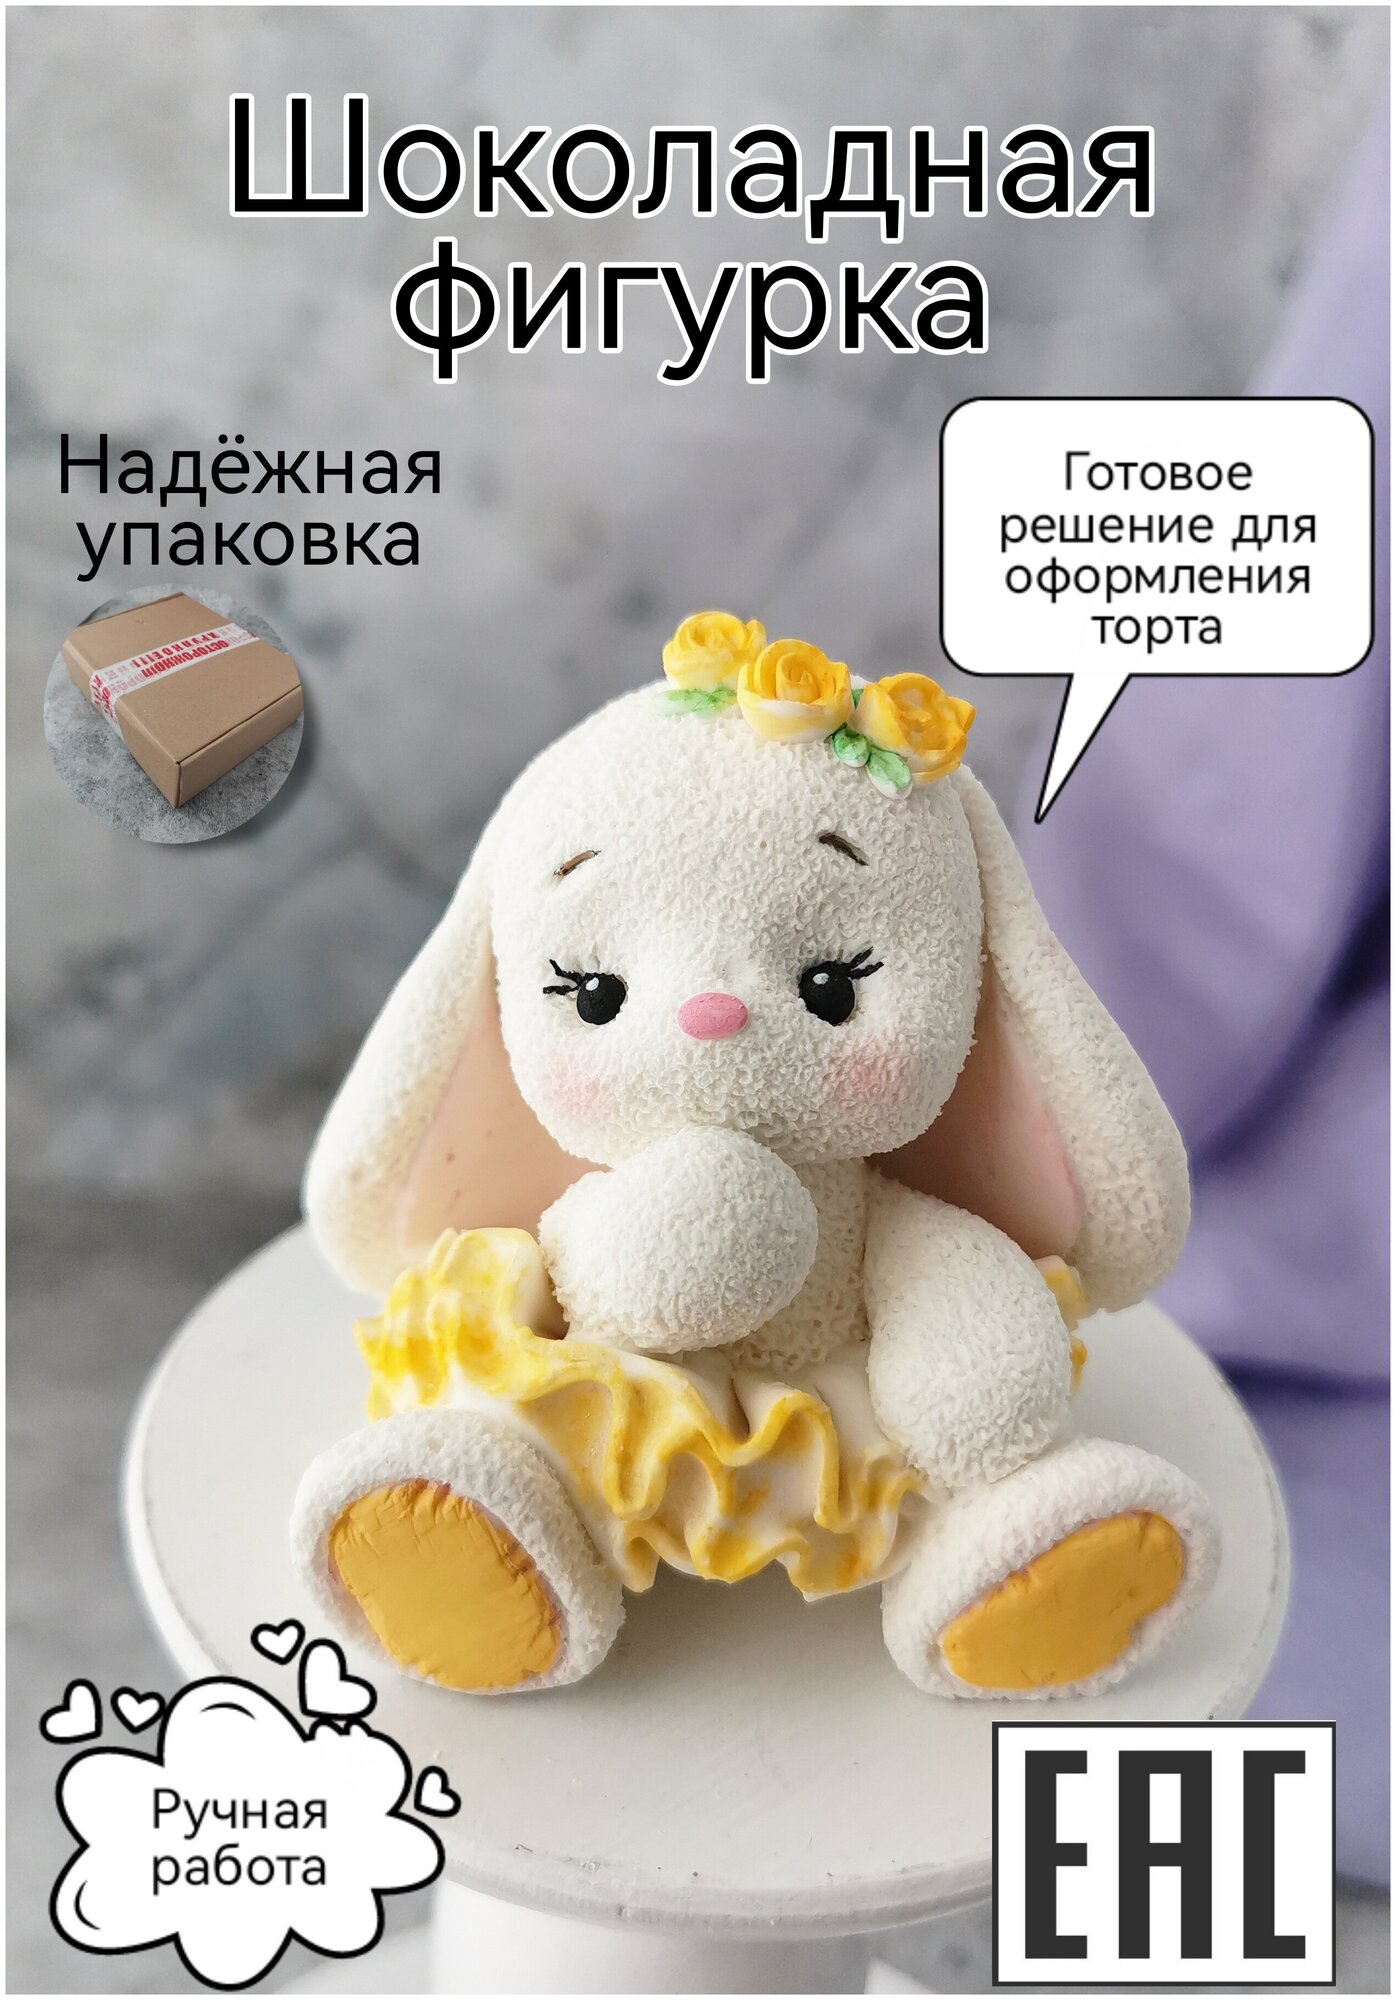 Шоколадная фигурка из глазури Украшение торта Сладкий подарок "Зайка", желтая